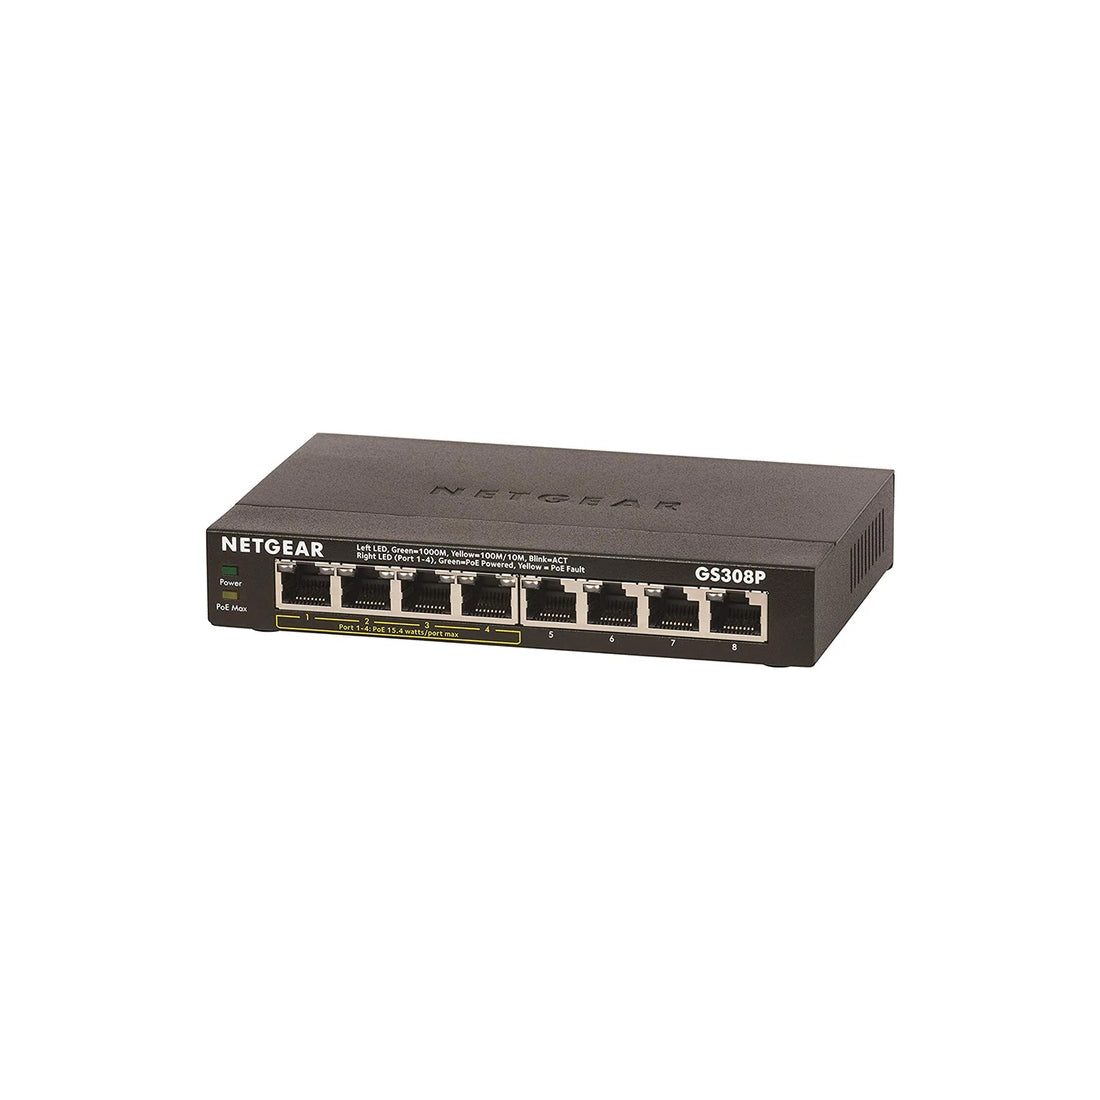 NETGEAR SOHO ईथरनेट GS308P 8 पोर्ट अप्रबंधित नेटवर्क हब